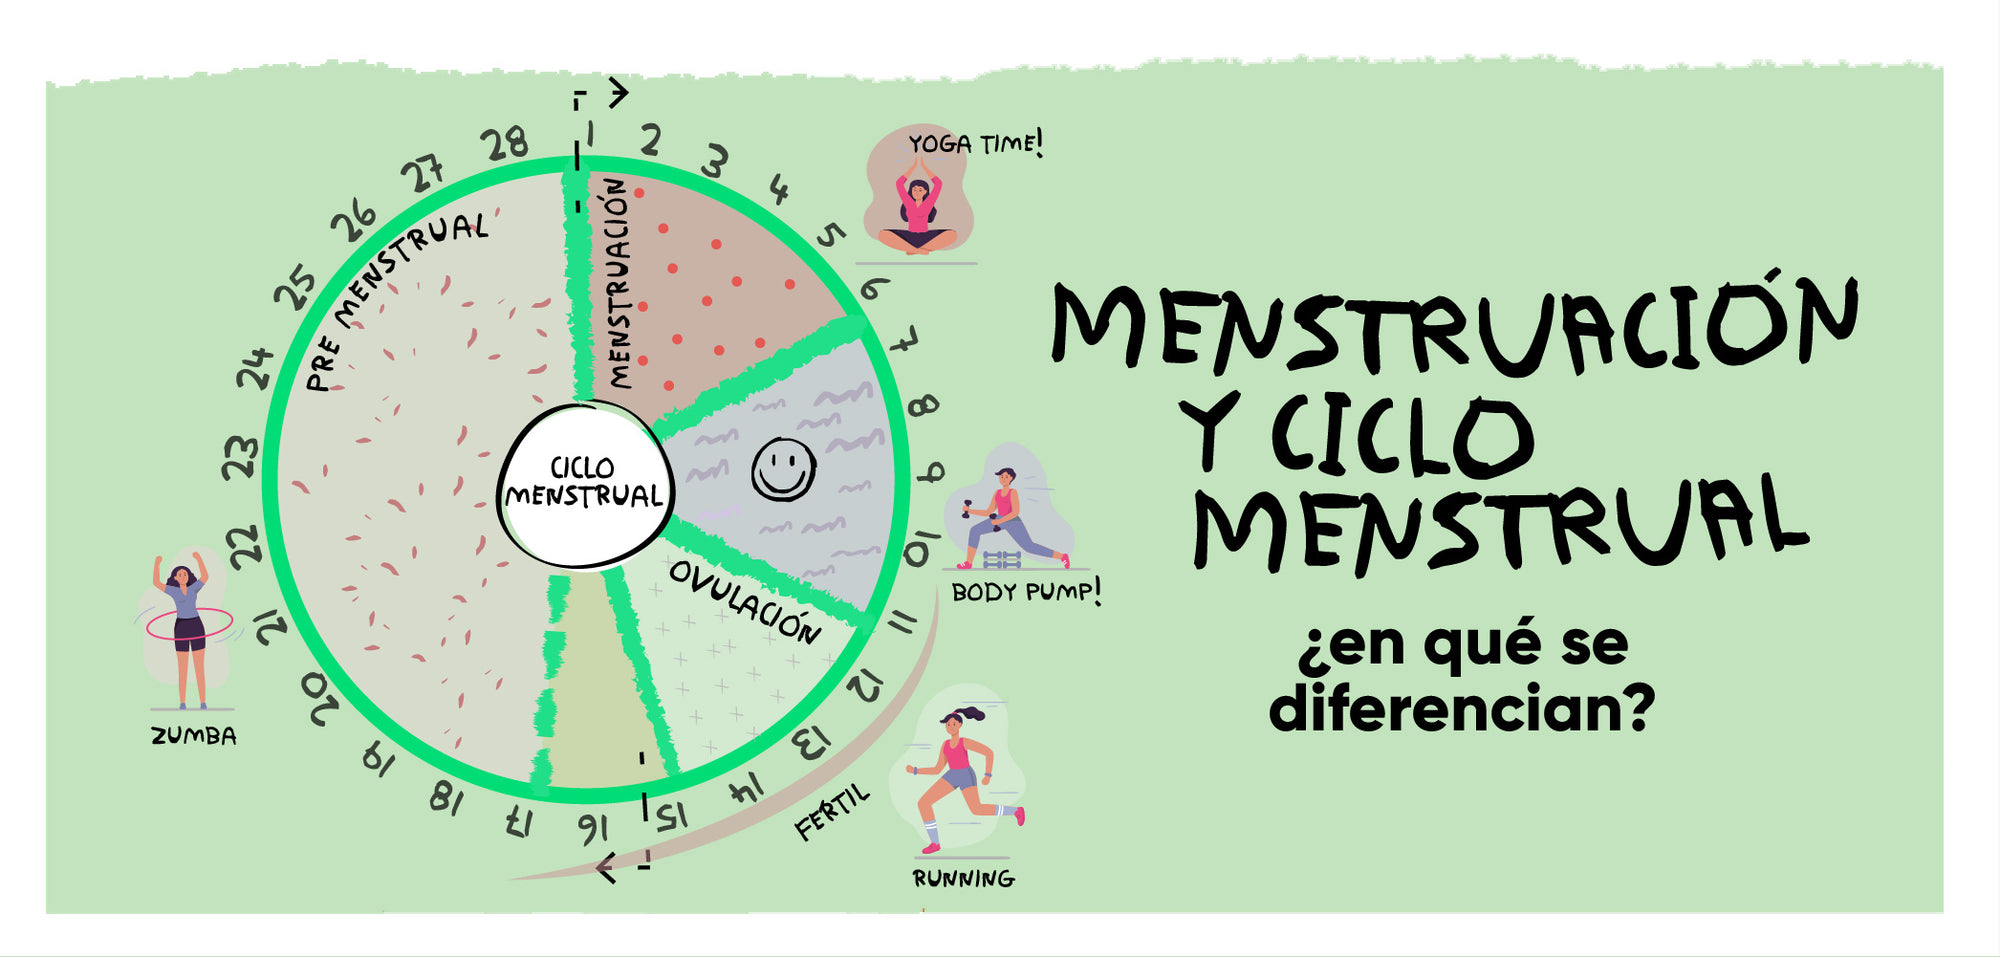 ¿Cuál es la diferencia entre menstruación y ciclo menstrual?